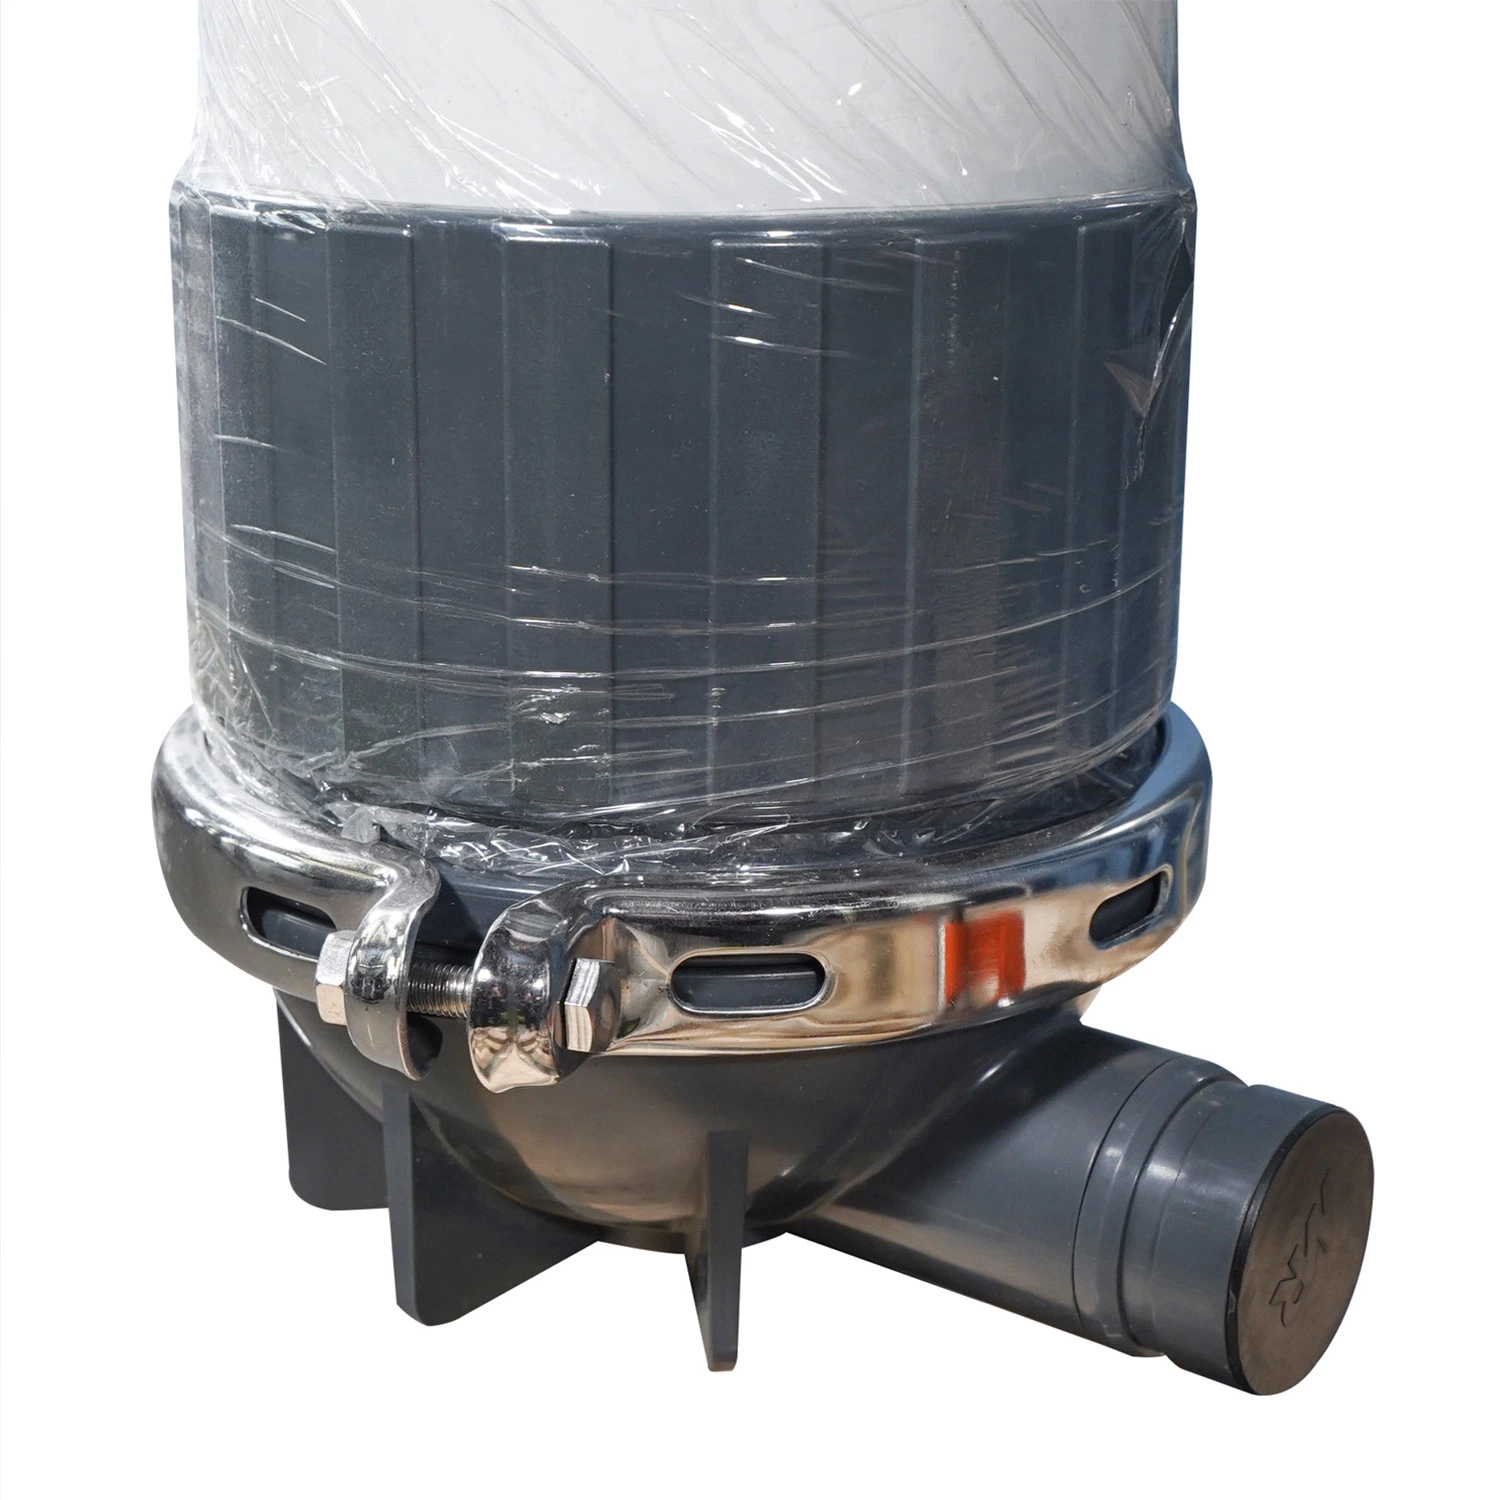 فلترة النظام نظام فلترة المياه الصناعية نظام الأنابيب UF سلسلة منتجات OEM